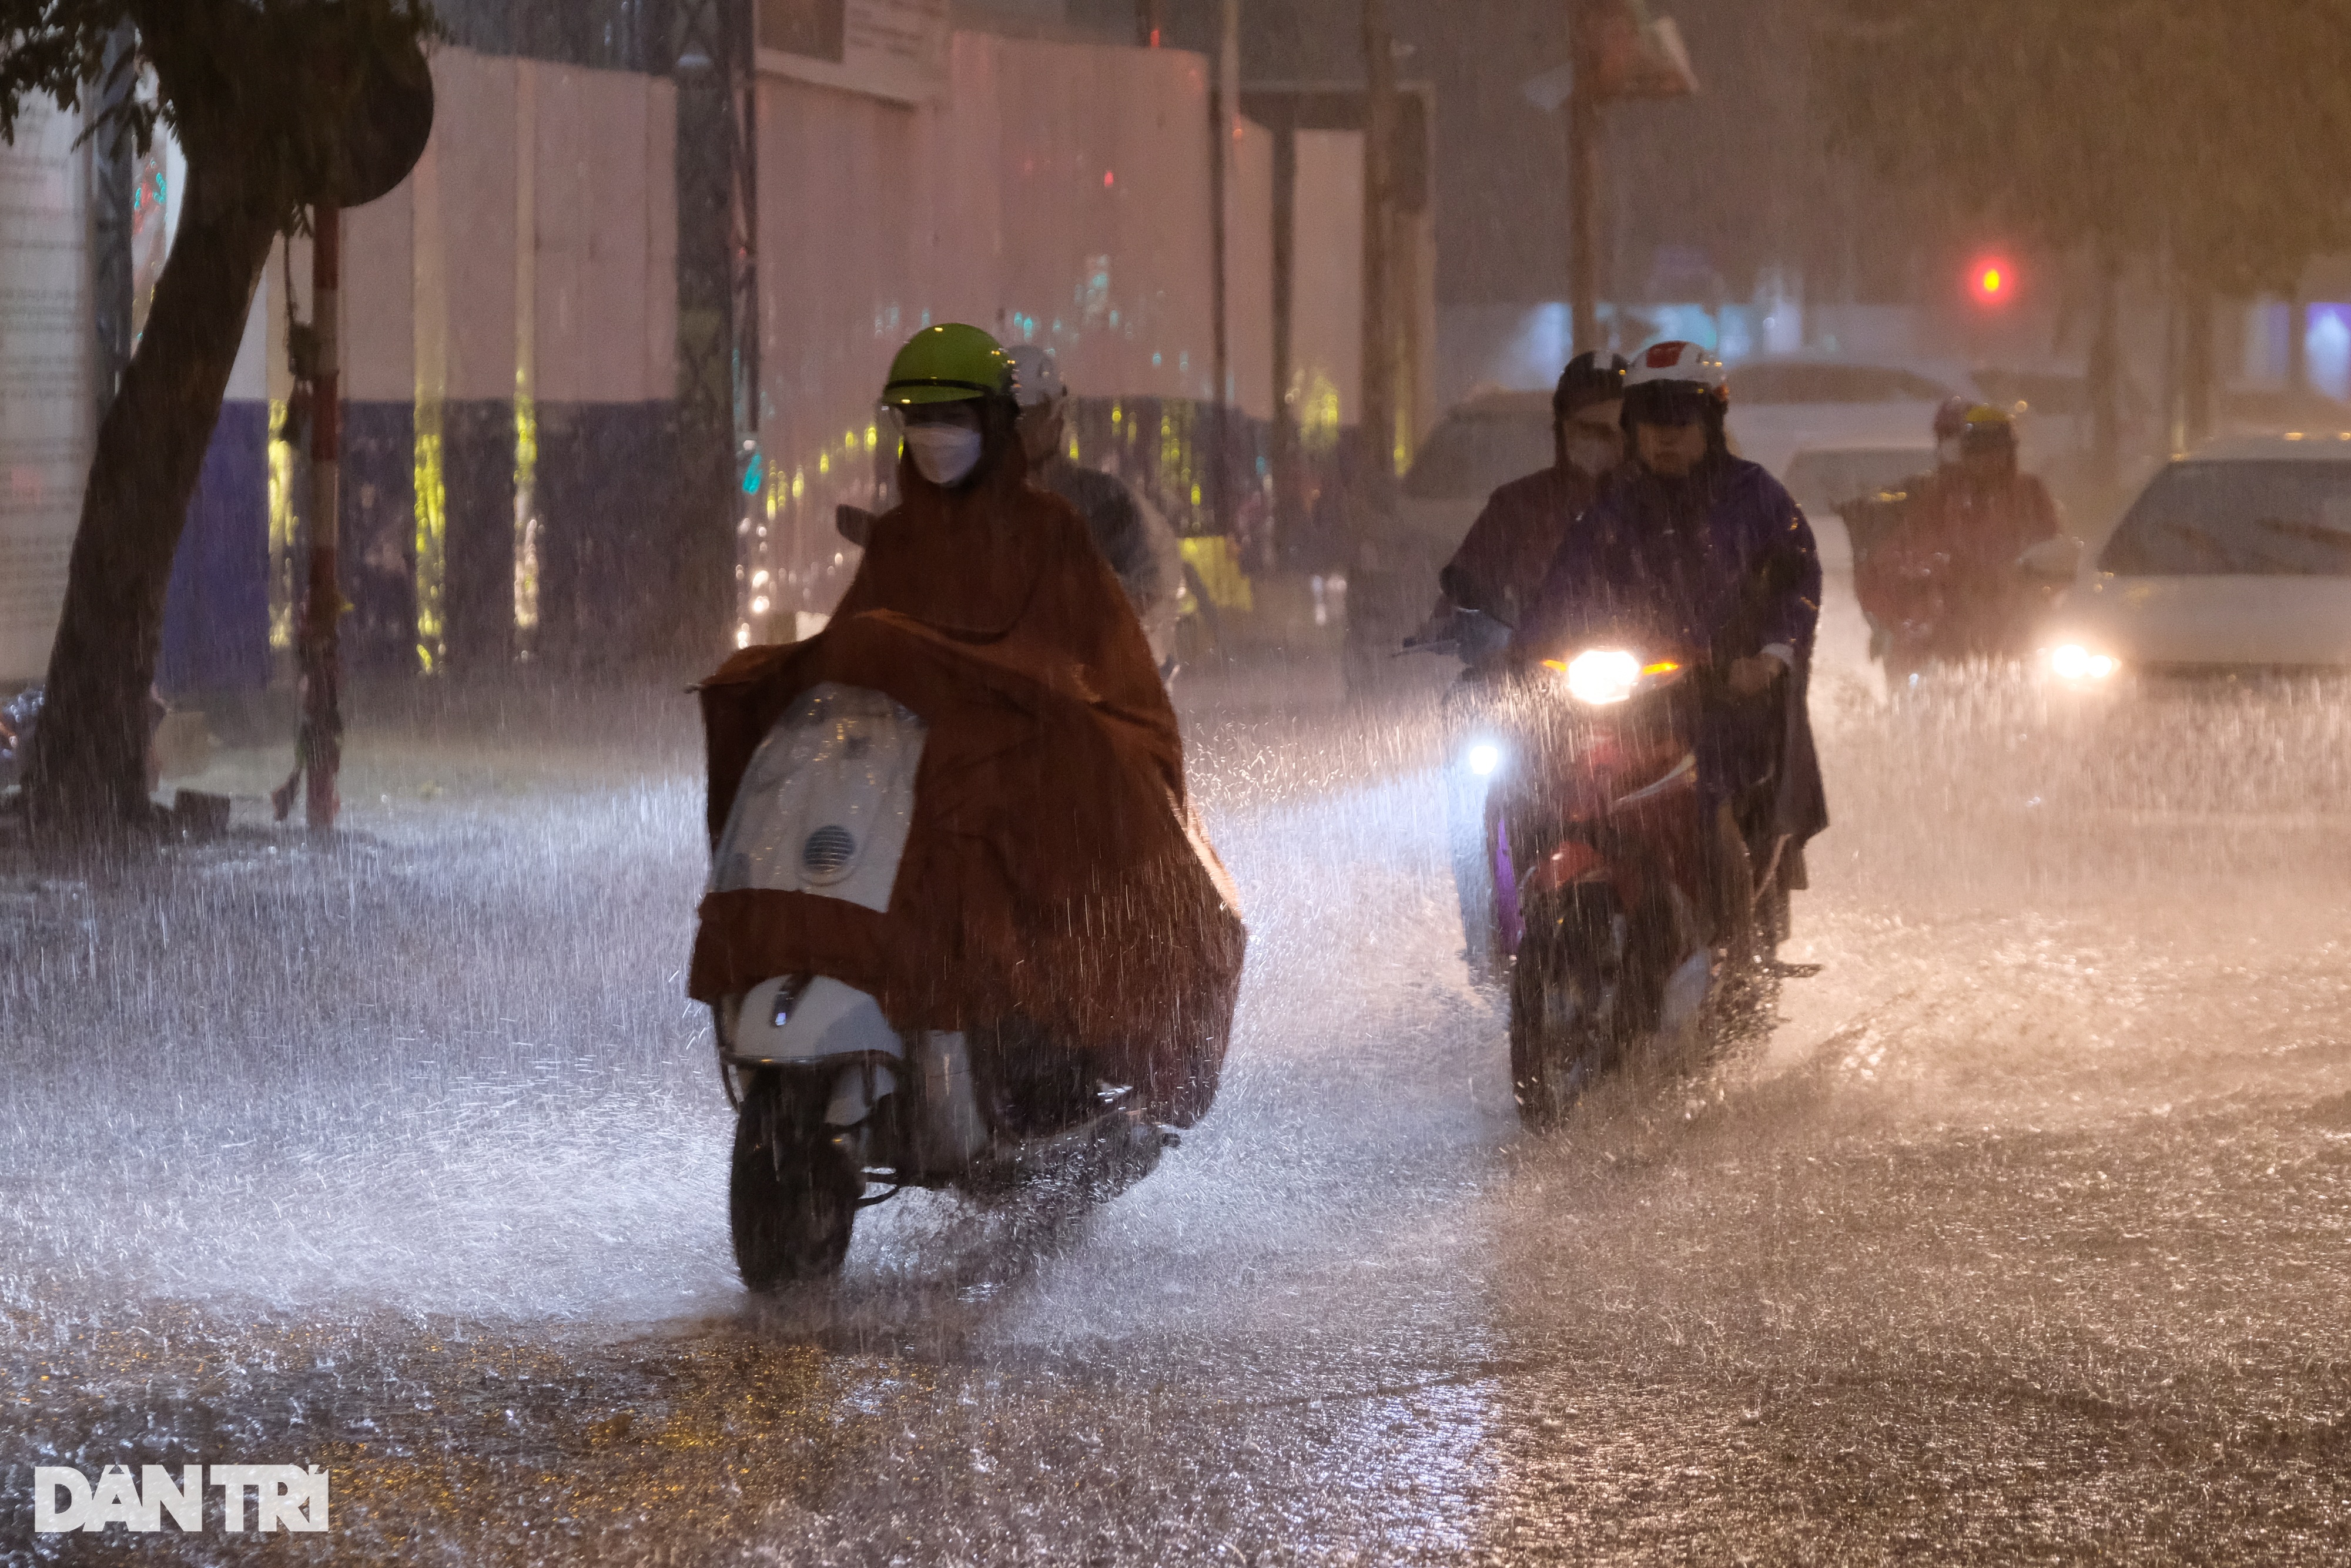 Cơn mưa lớn sầm sập đổ xuống, người Hà Nội chôn chân trên đường ngập - 6